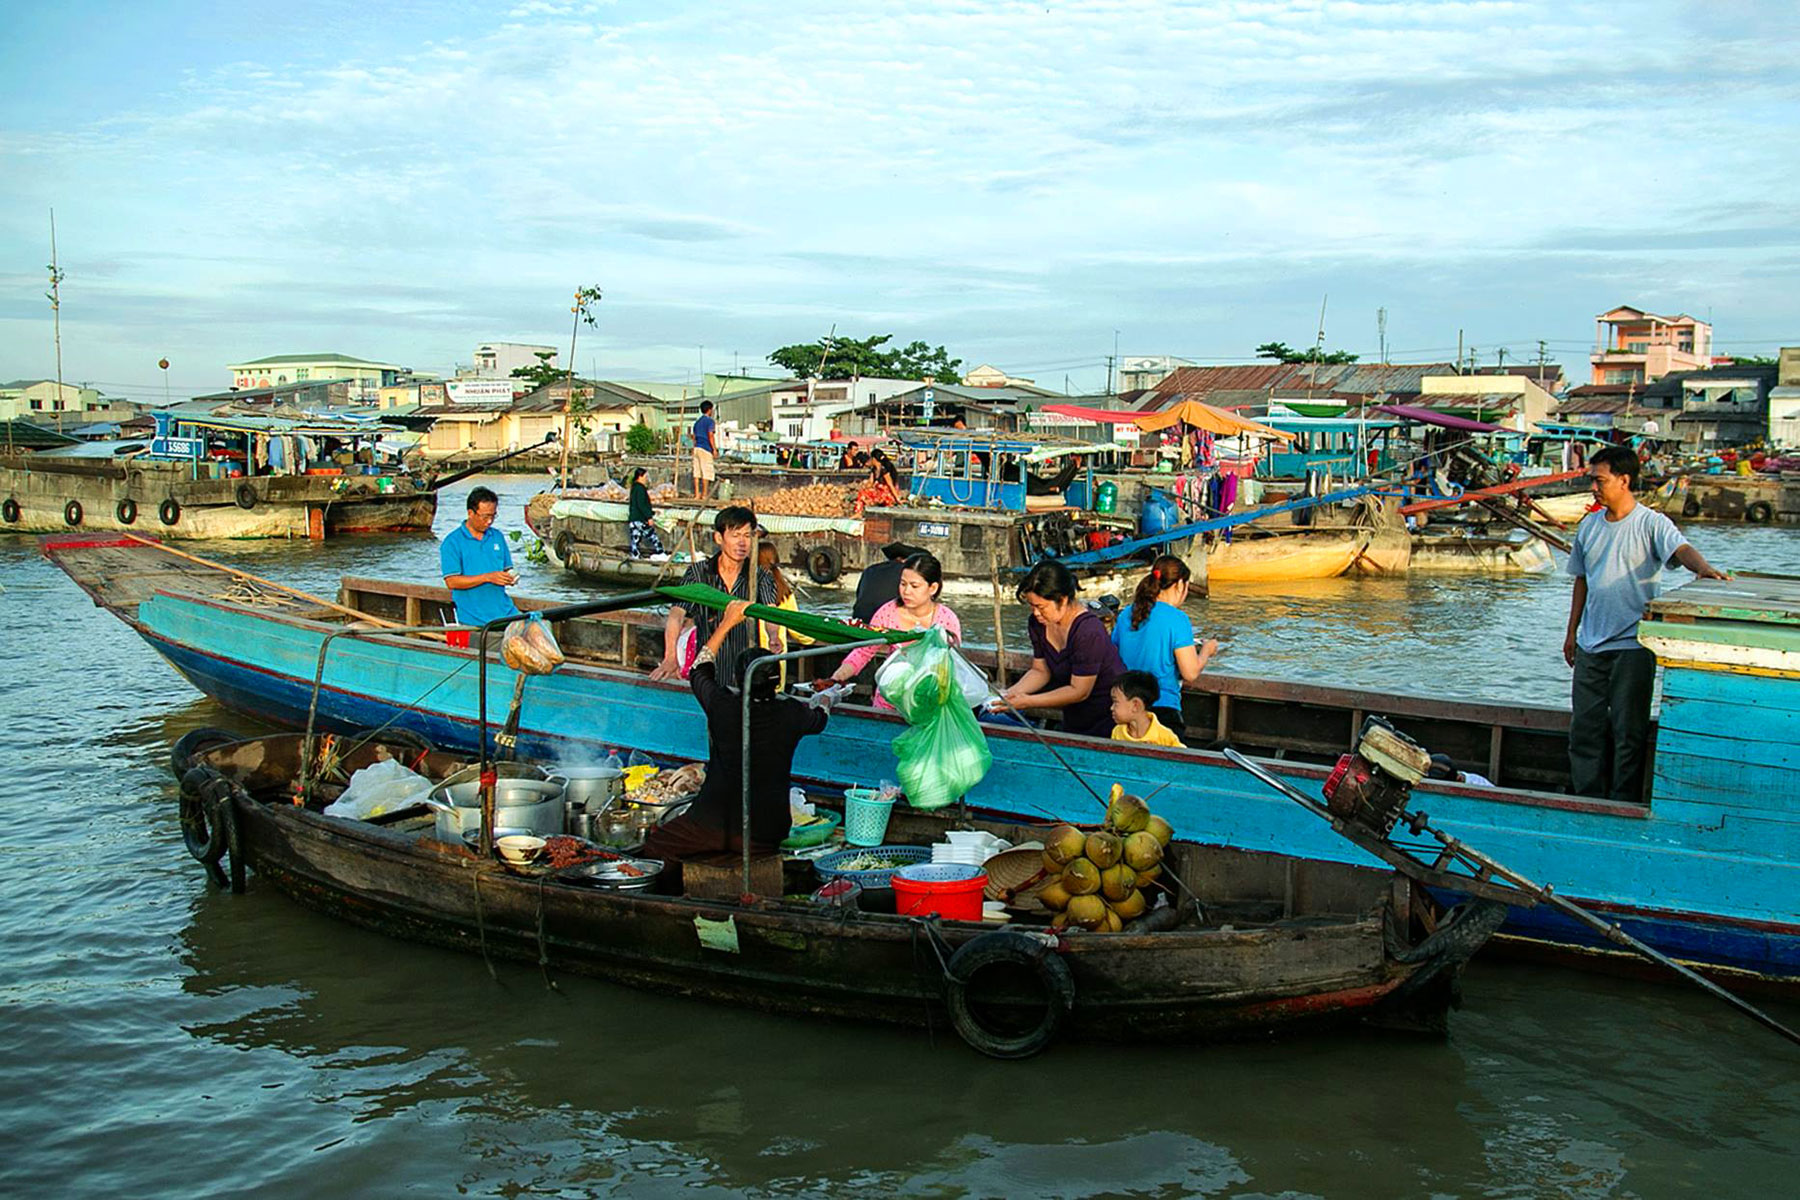 Chợ nổi Cái Răng – Cần Thơ – Photo: Nguyễn Vinh Linh Quốc